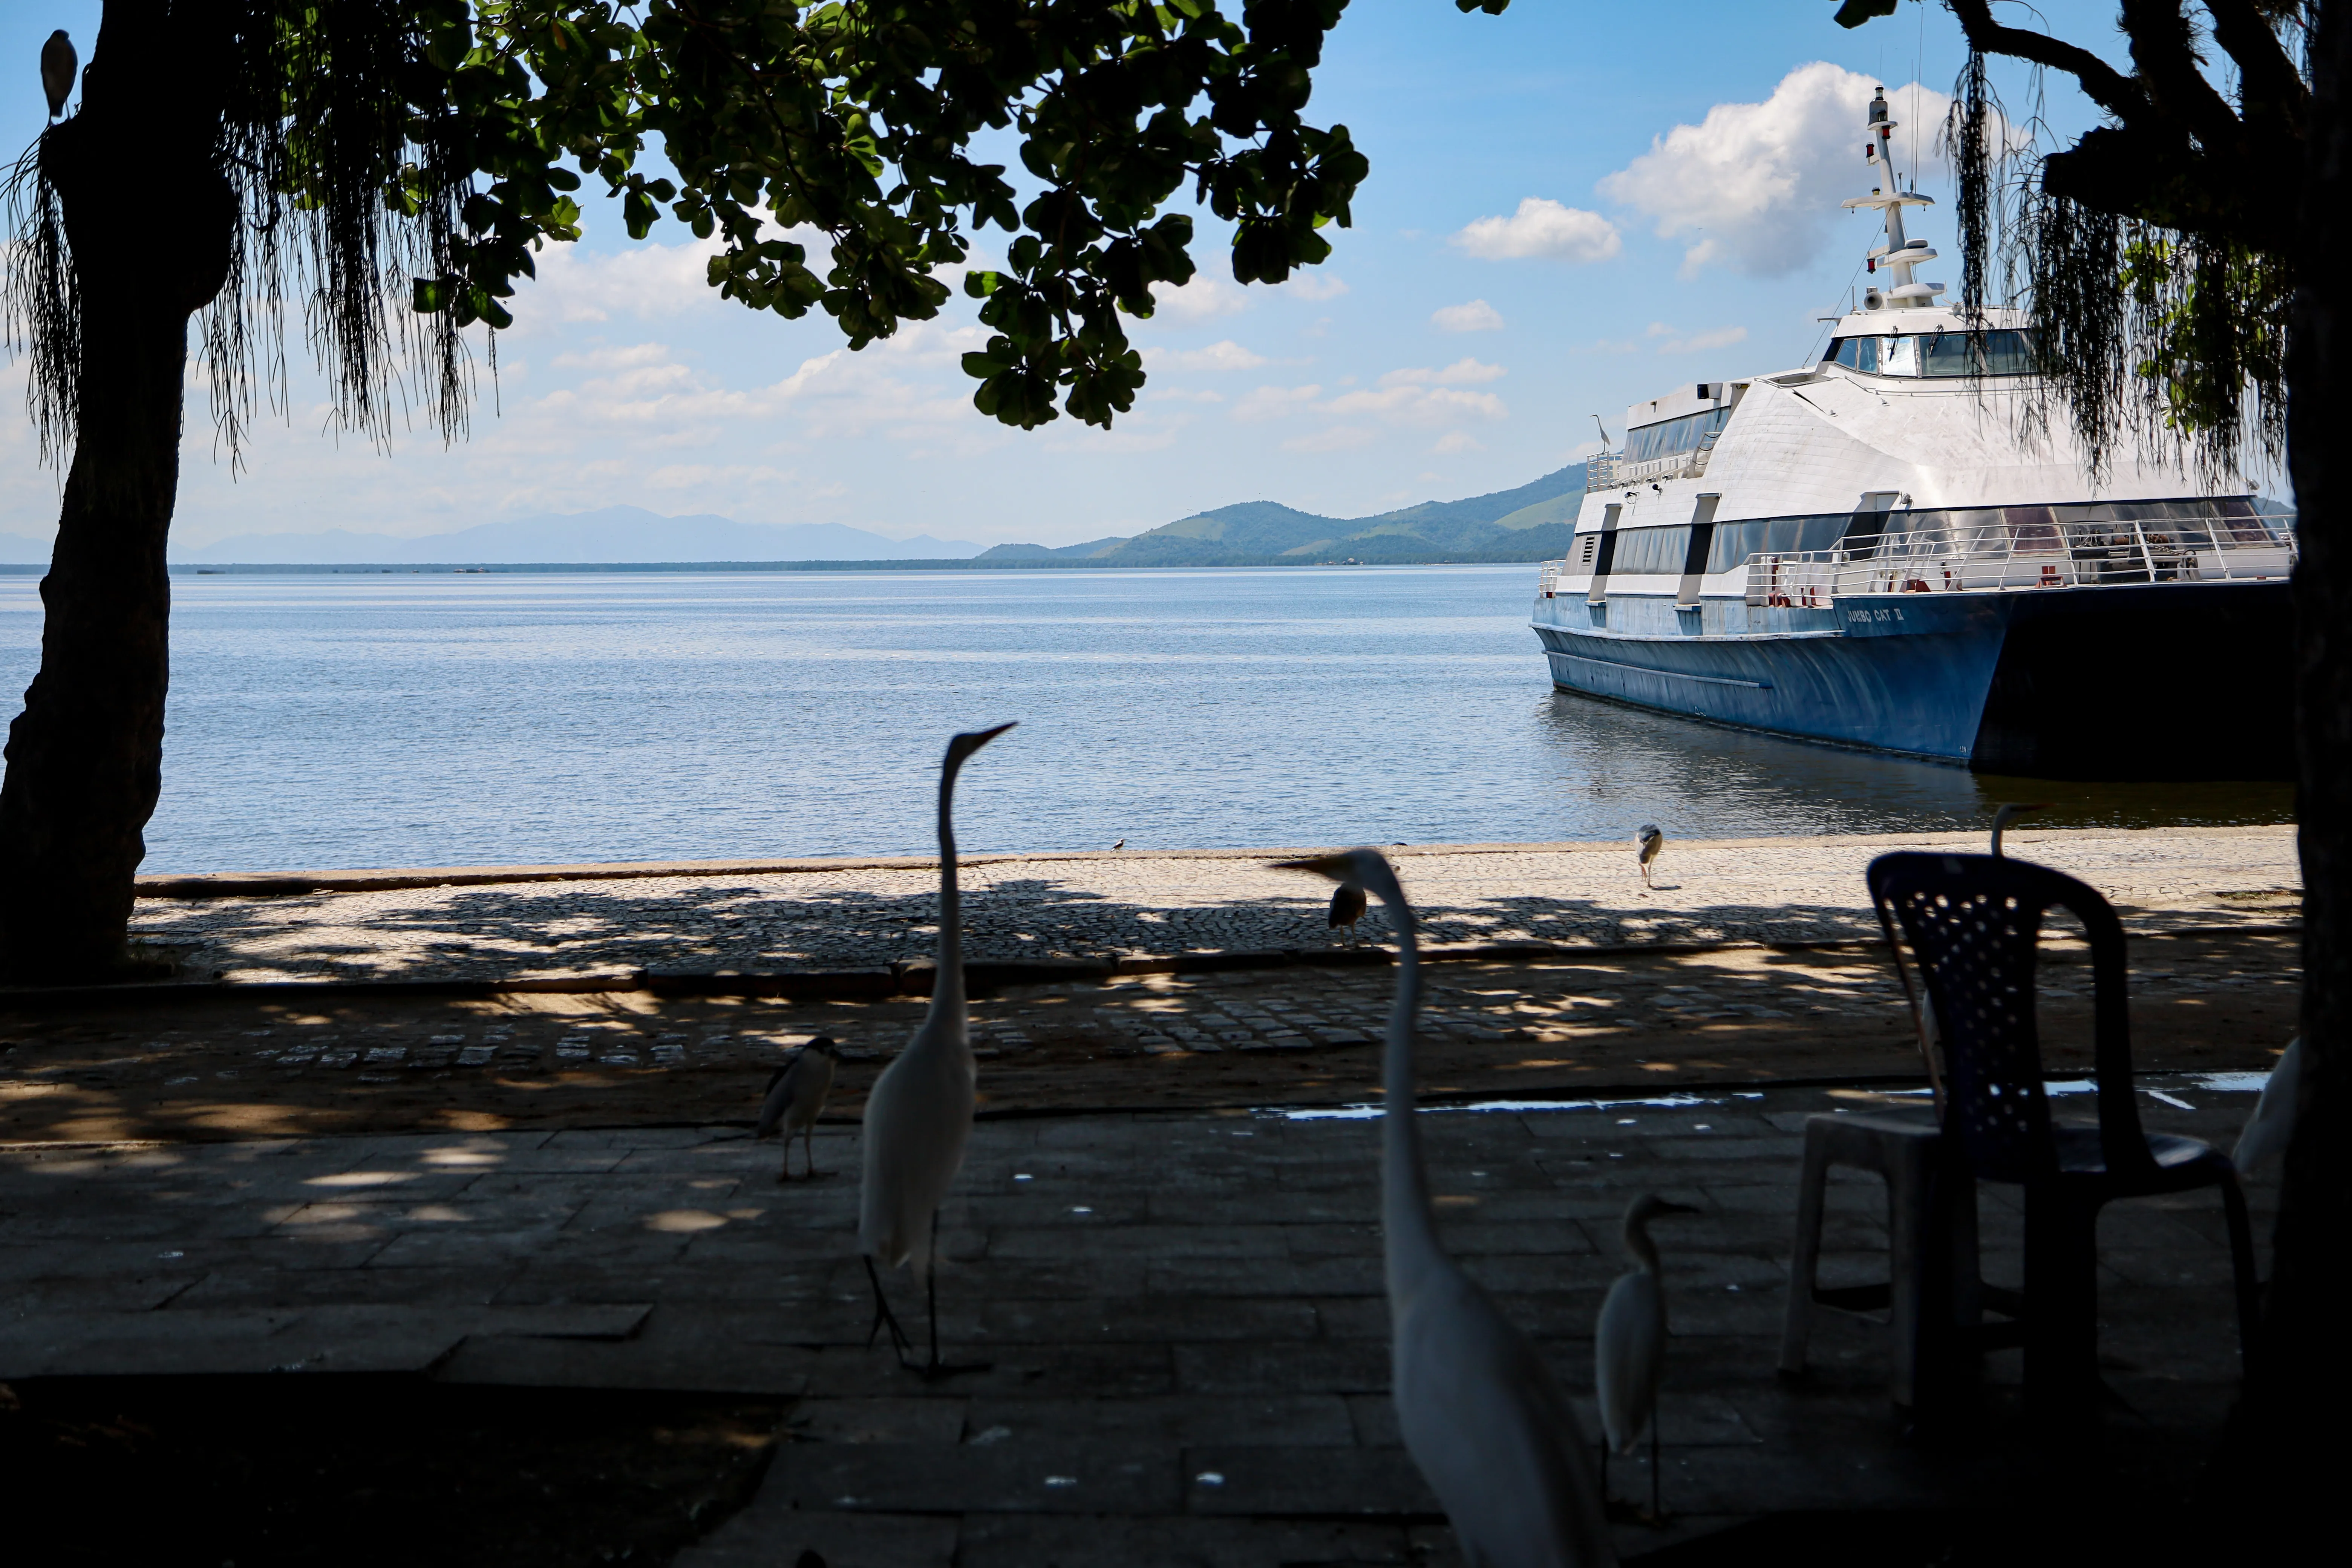 O principal meio de transporte para se chegar à ilha é a barca Rio-Paquetá